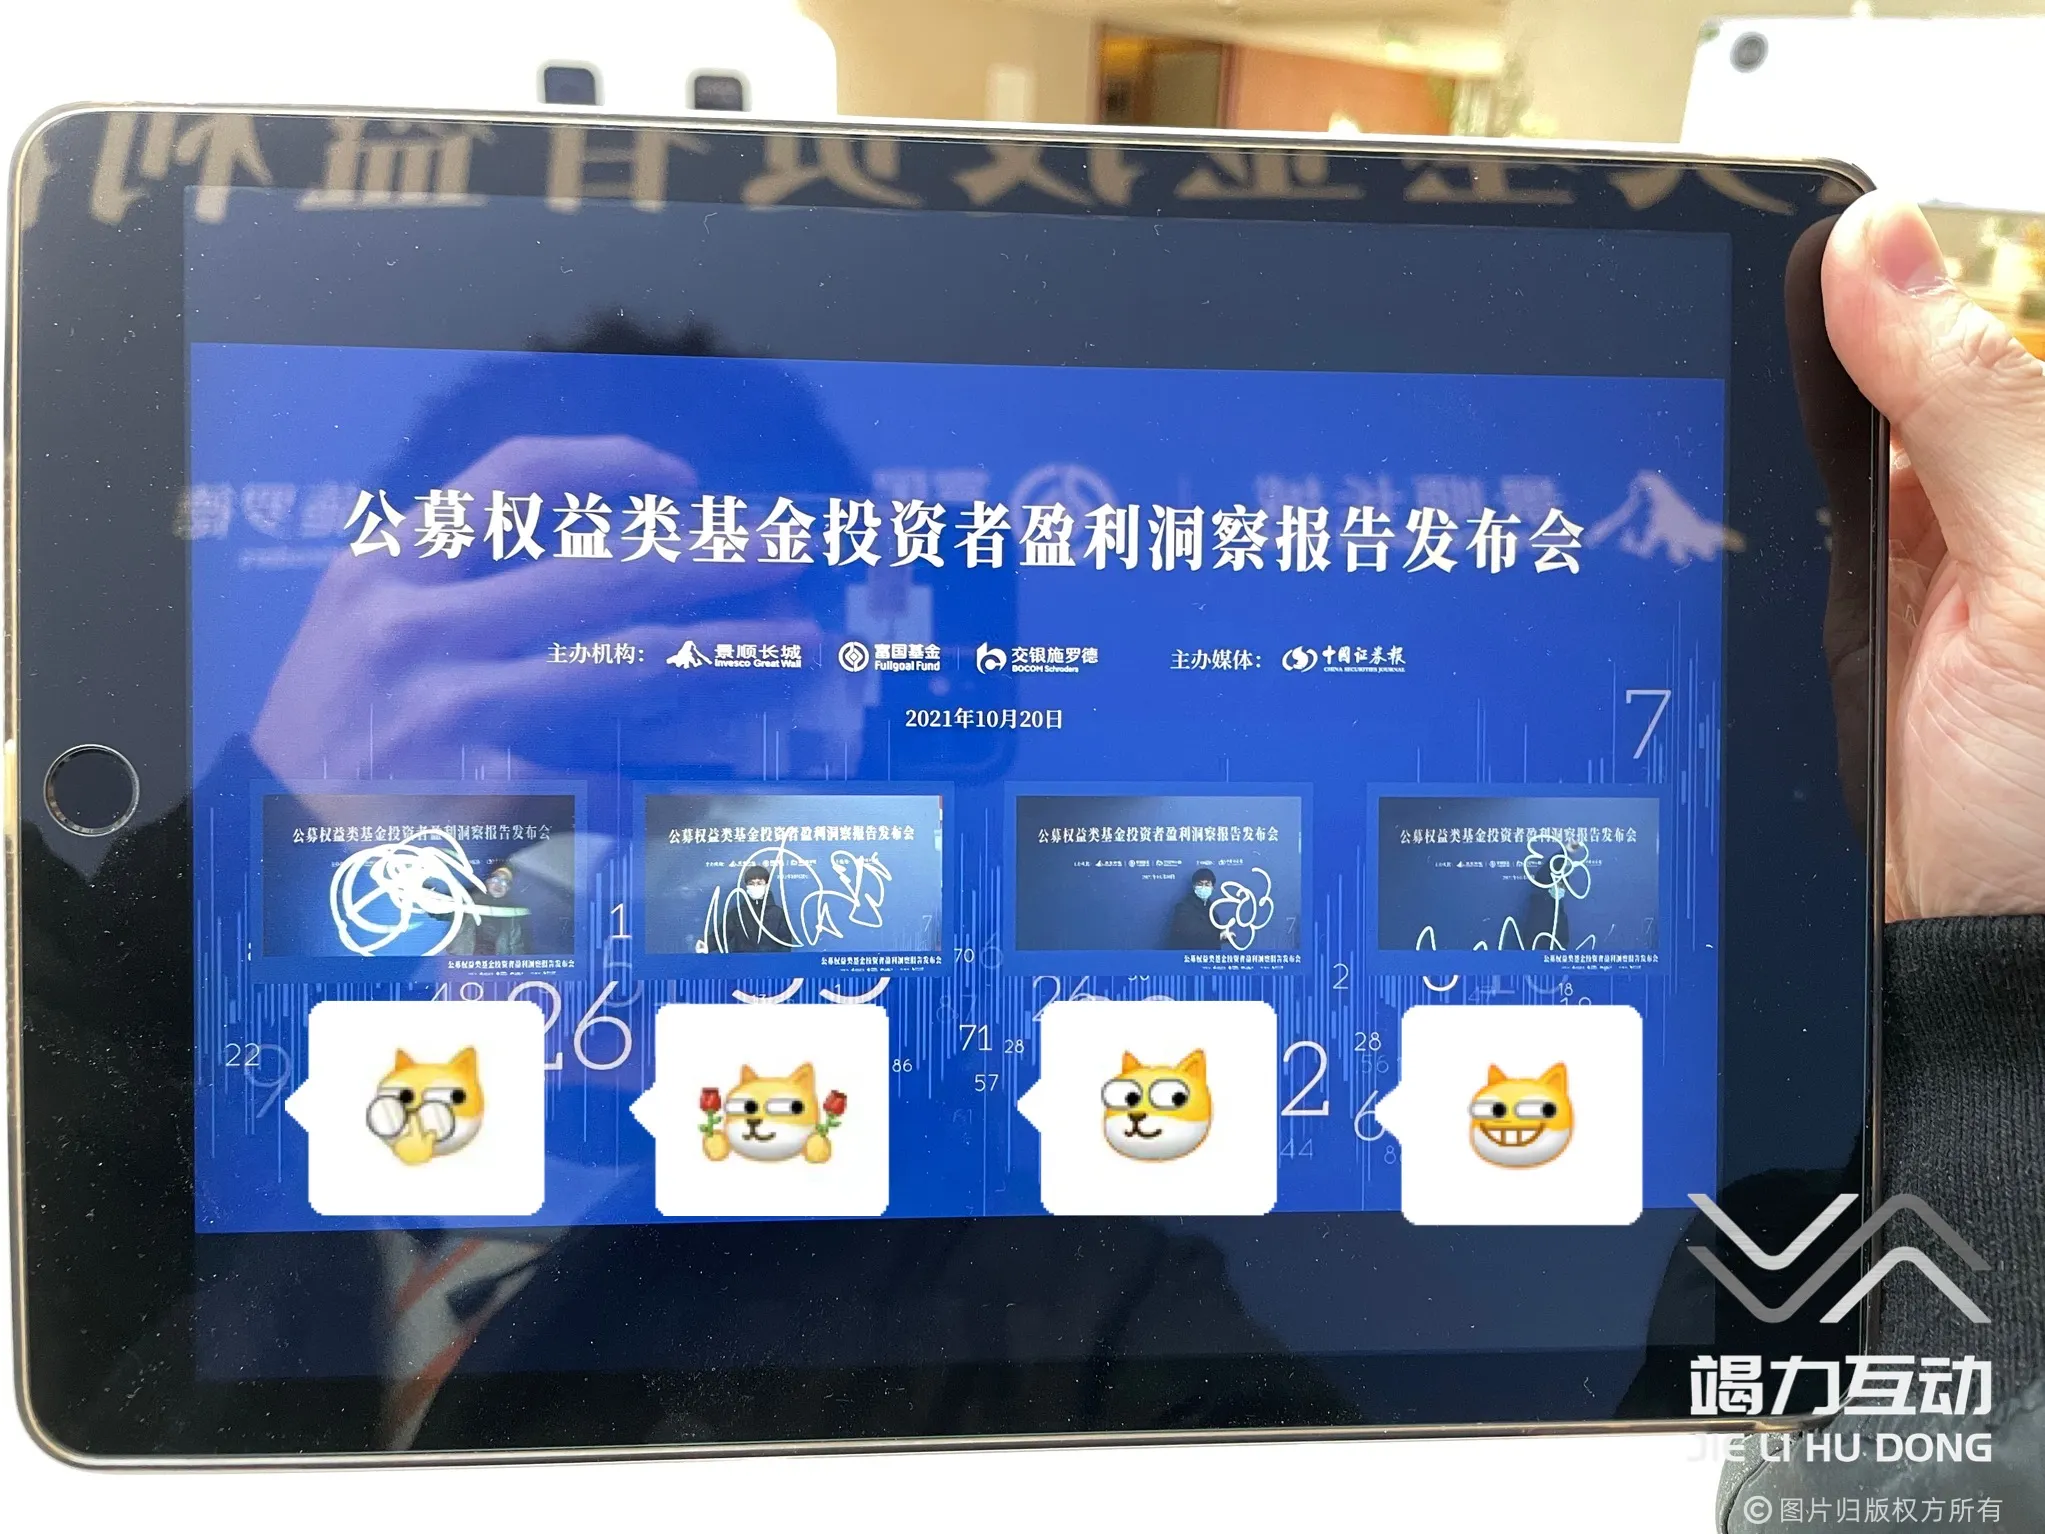 北京公募权益发布会光绘签到互动装置